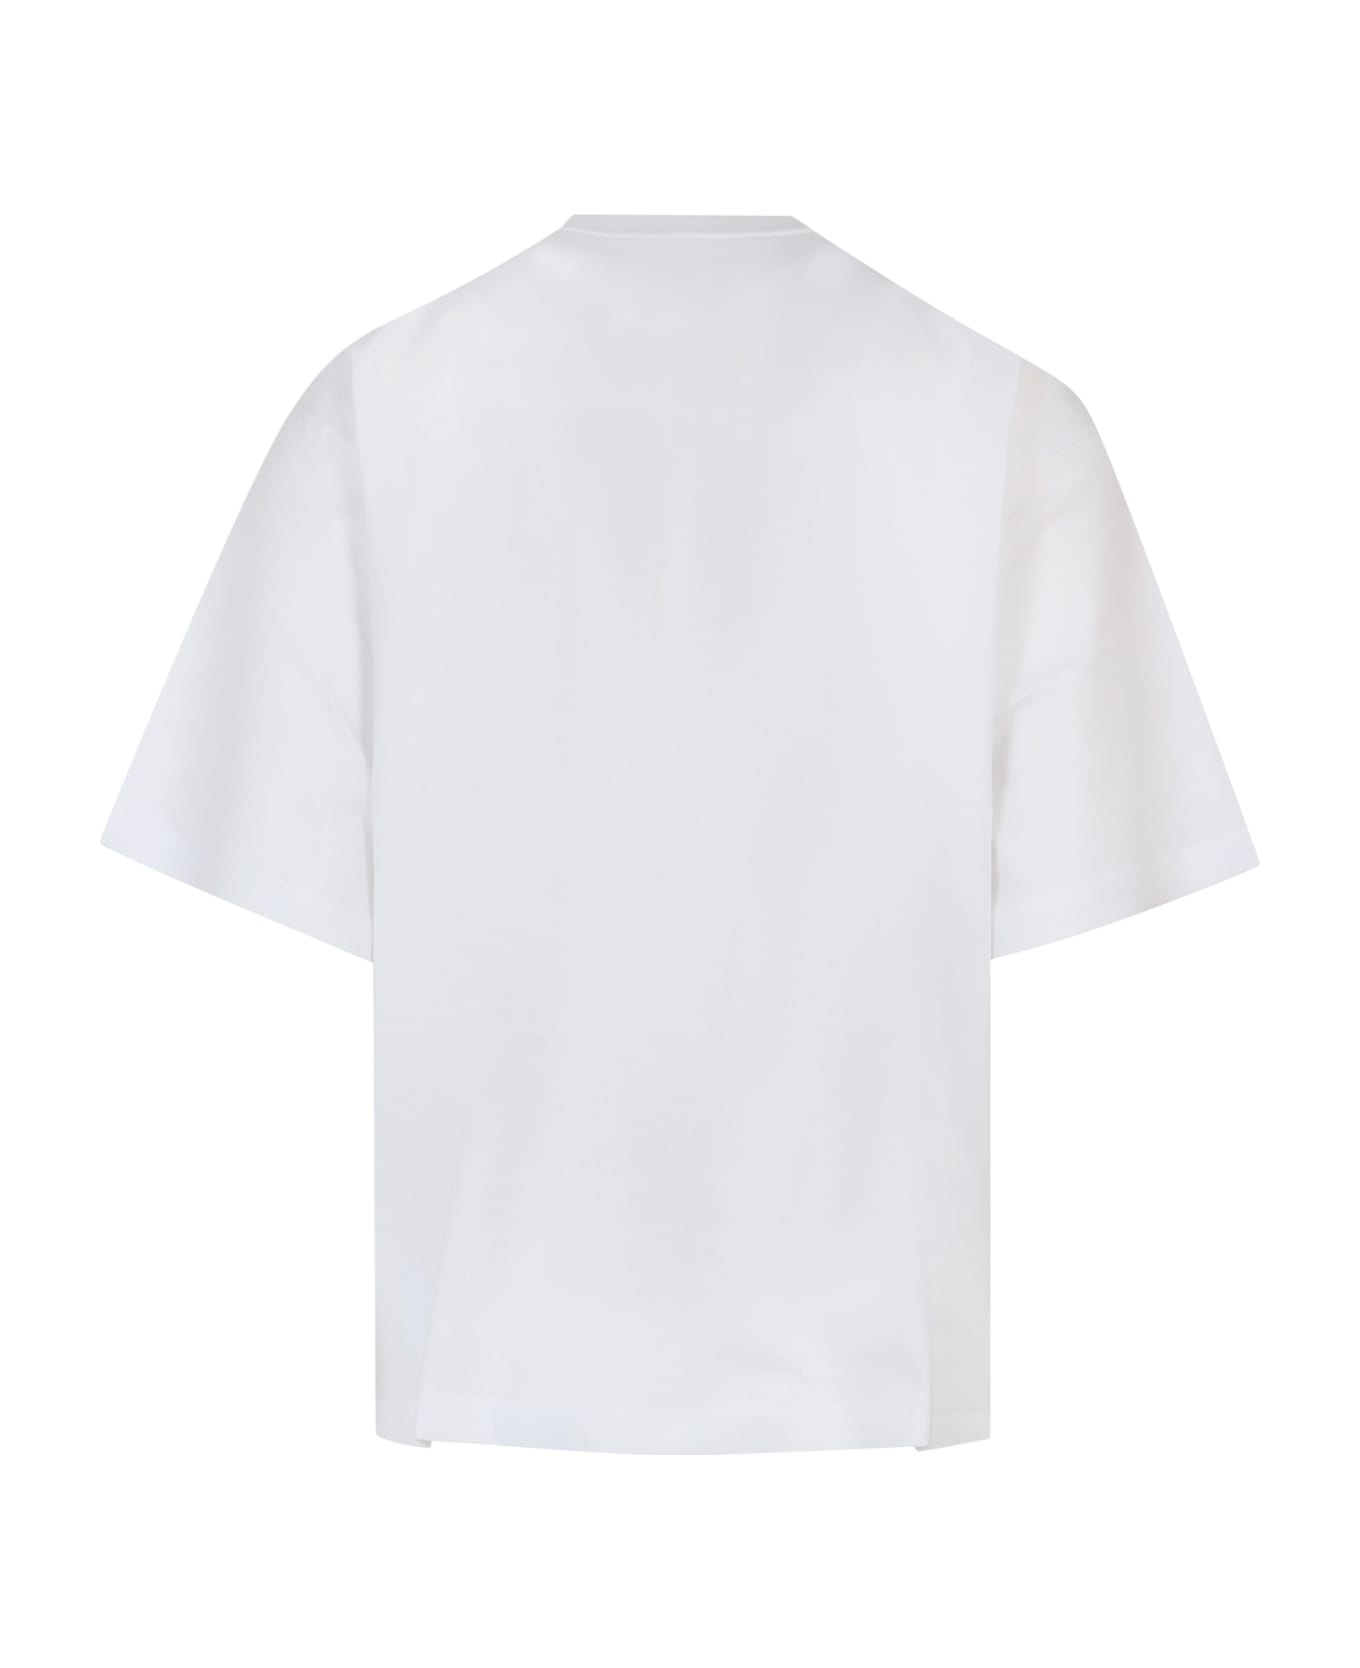 Marni T-shirt - White